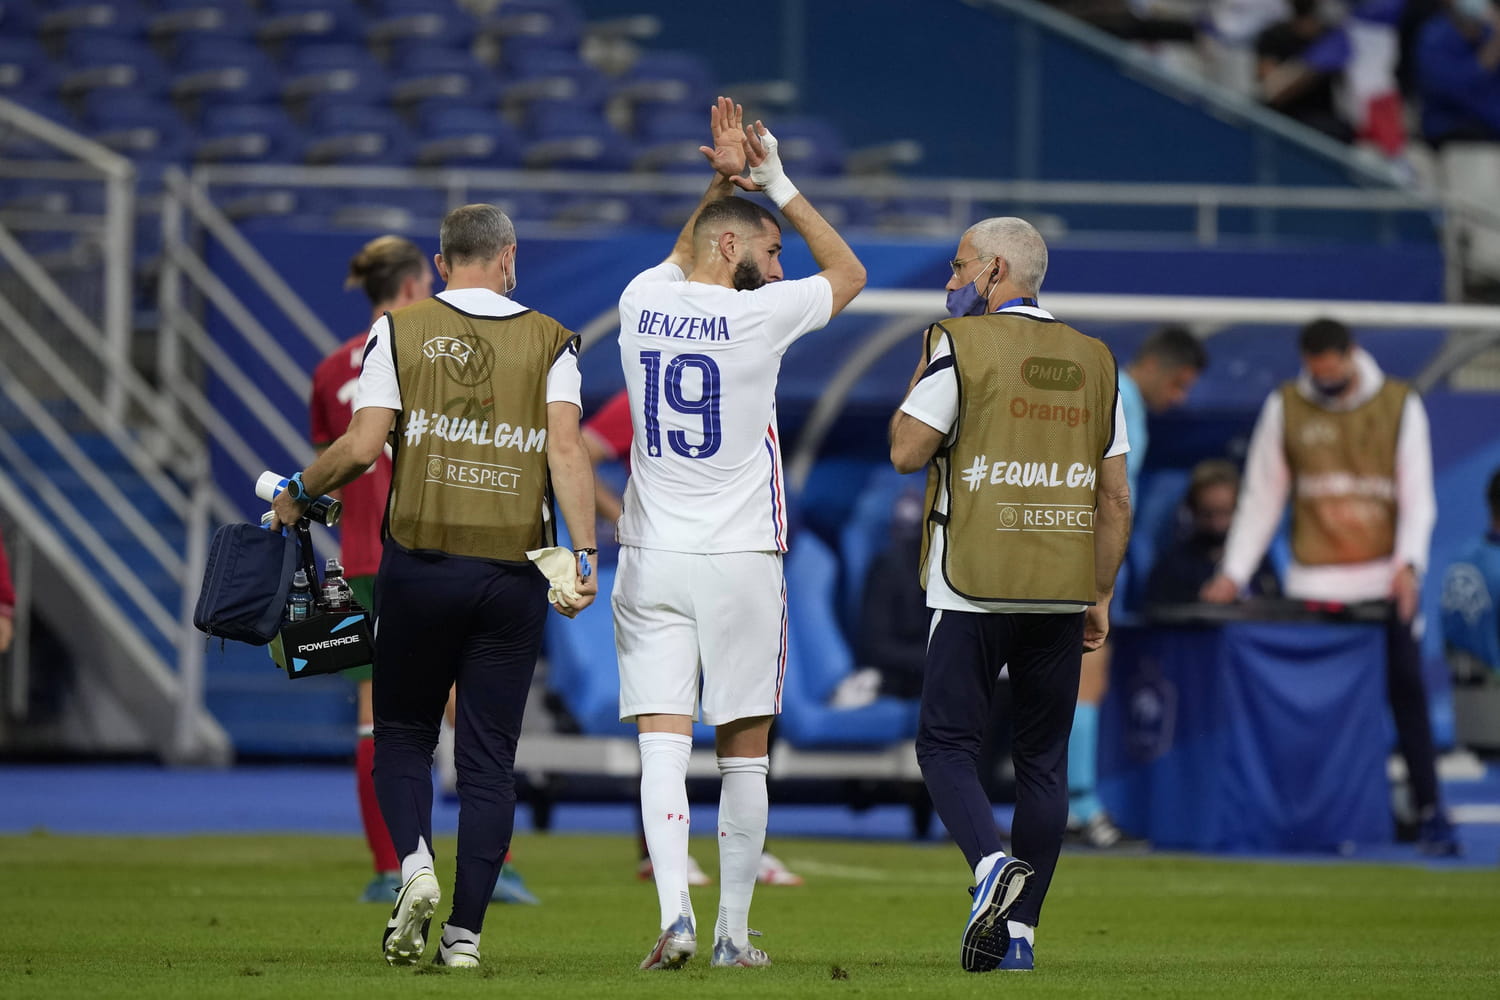 Sorti sur blessure, Karim Benzema reçoit une bonne nouvelle (RMC)